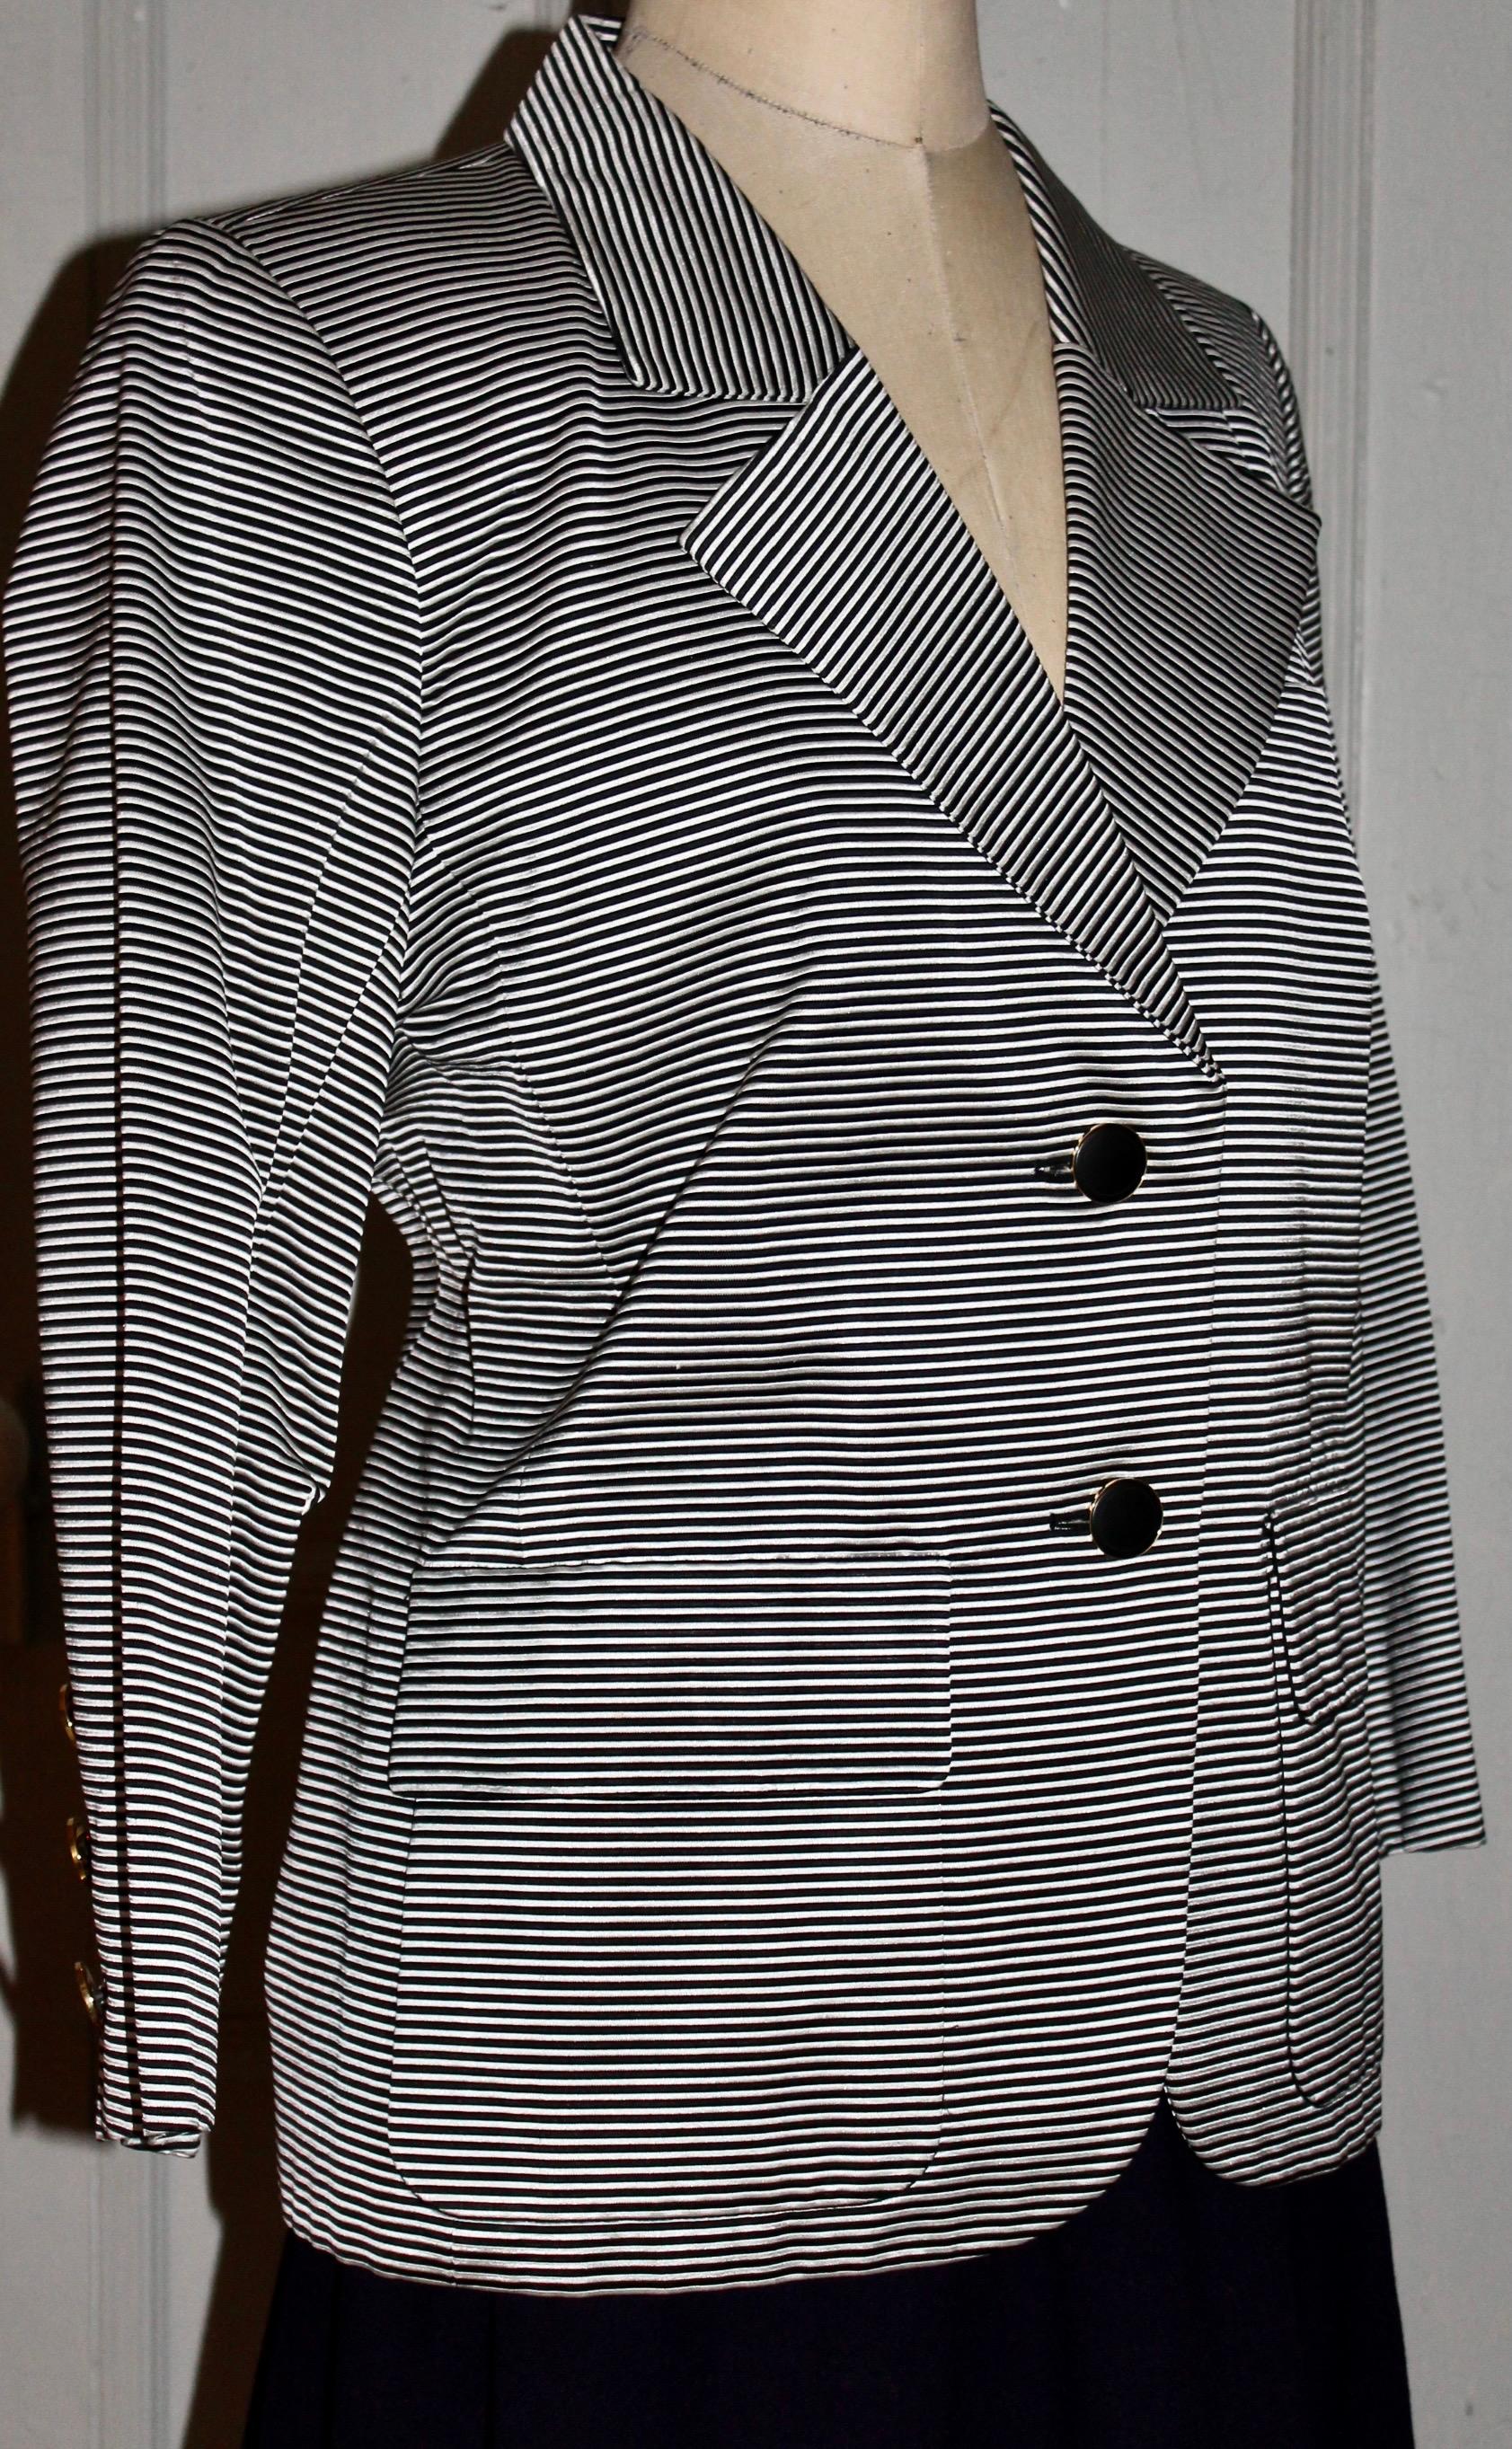 Une veste YSL Rive Gauche en acétate/coton à rayures horizontales noires et blanches.
Taille EU 44, épaules rembourrées